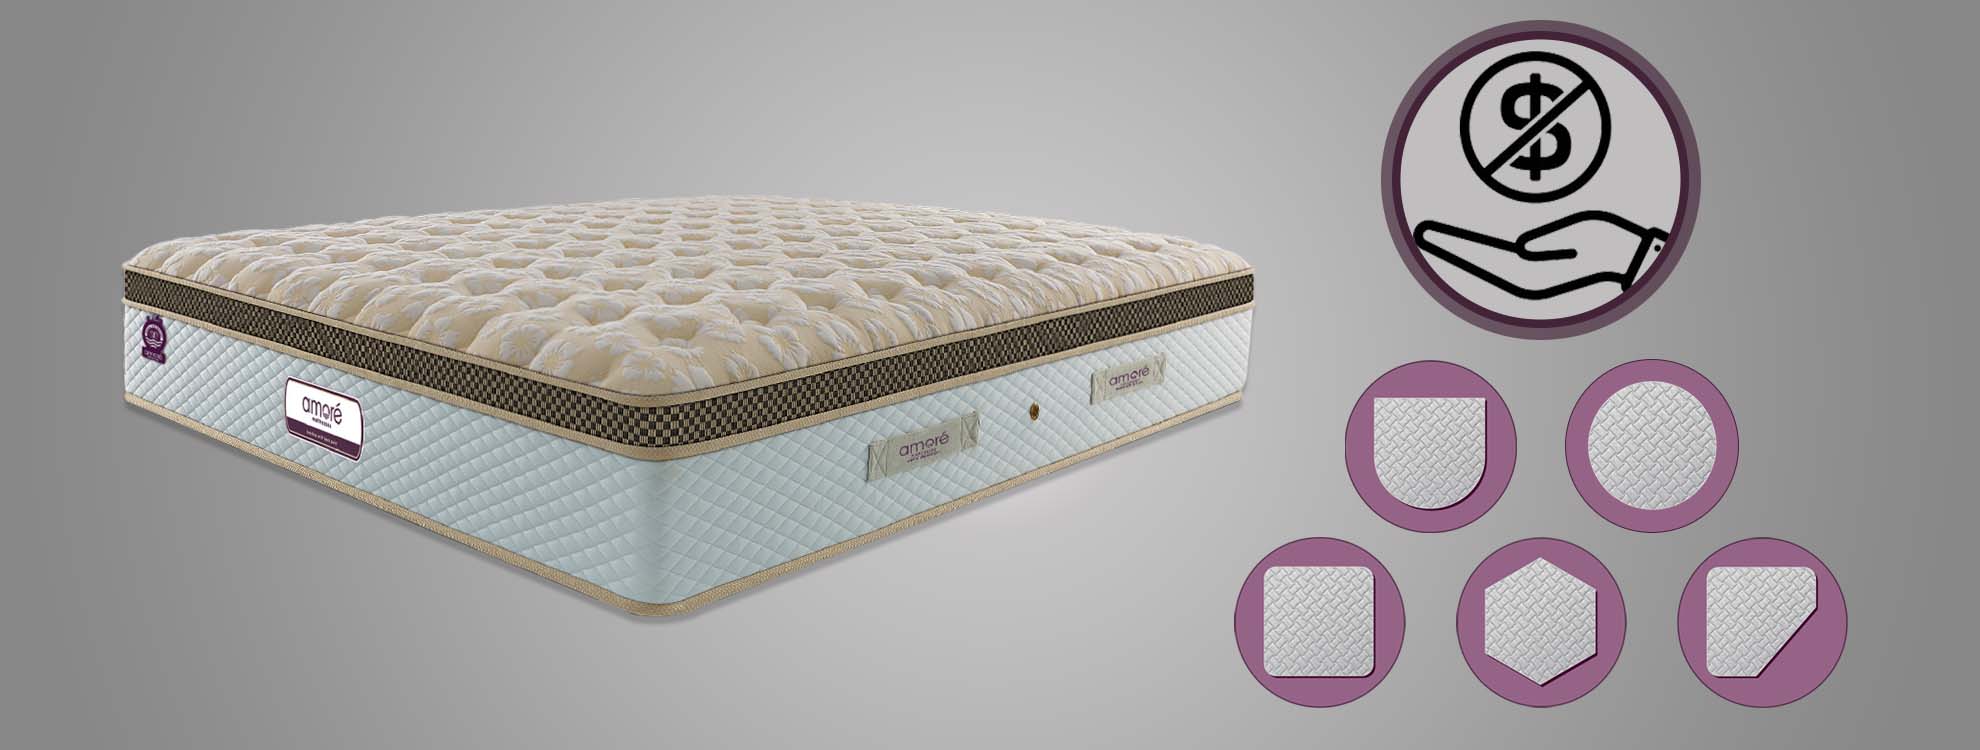 mattress customization